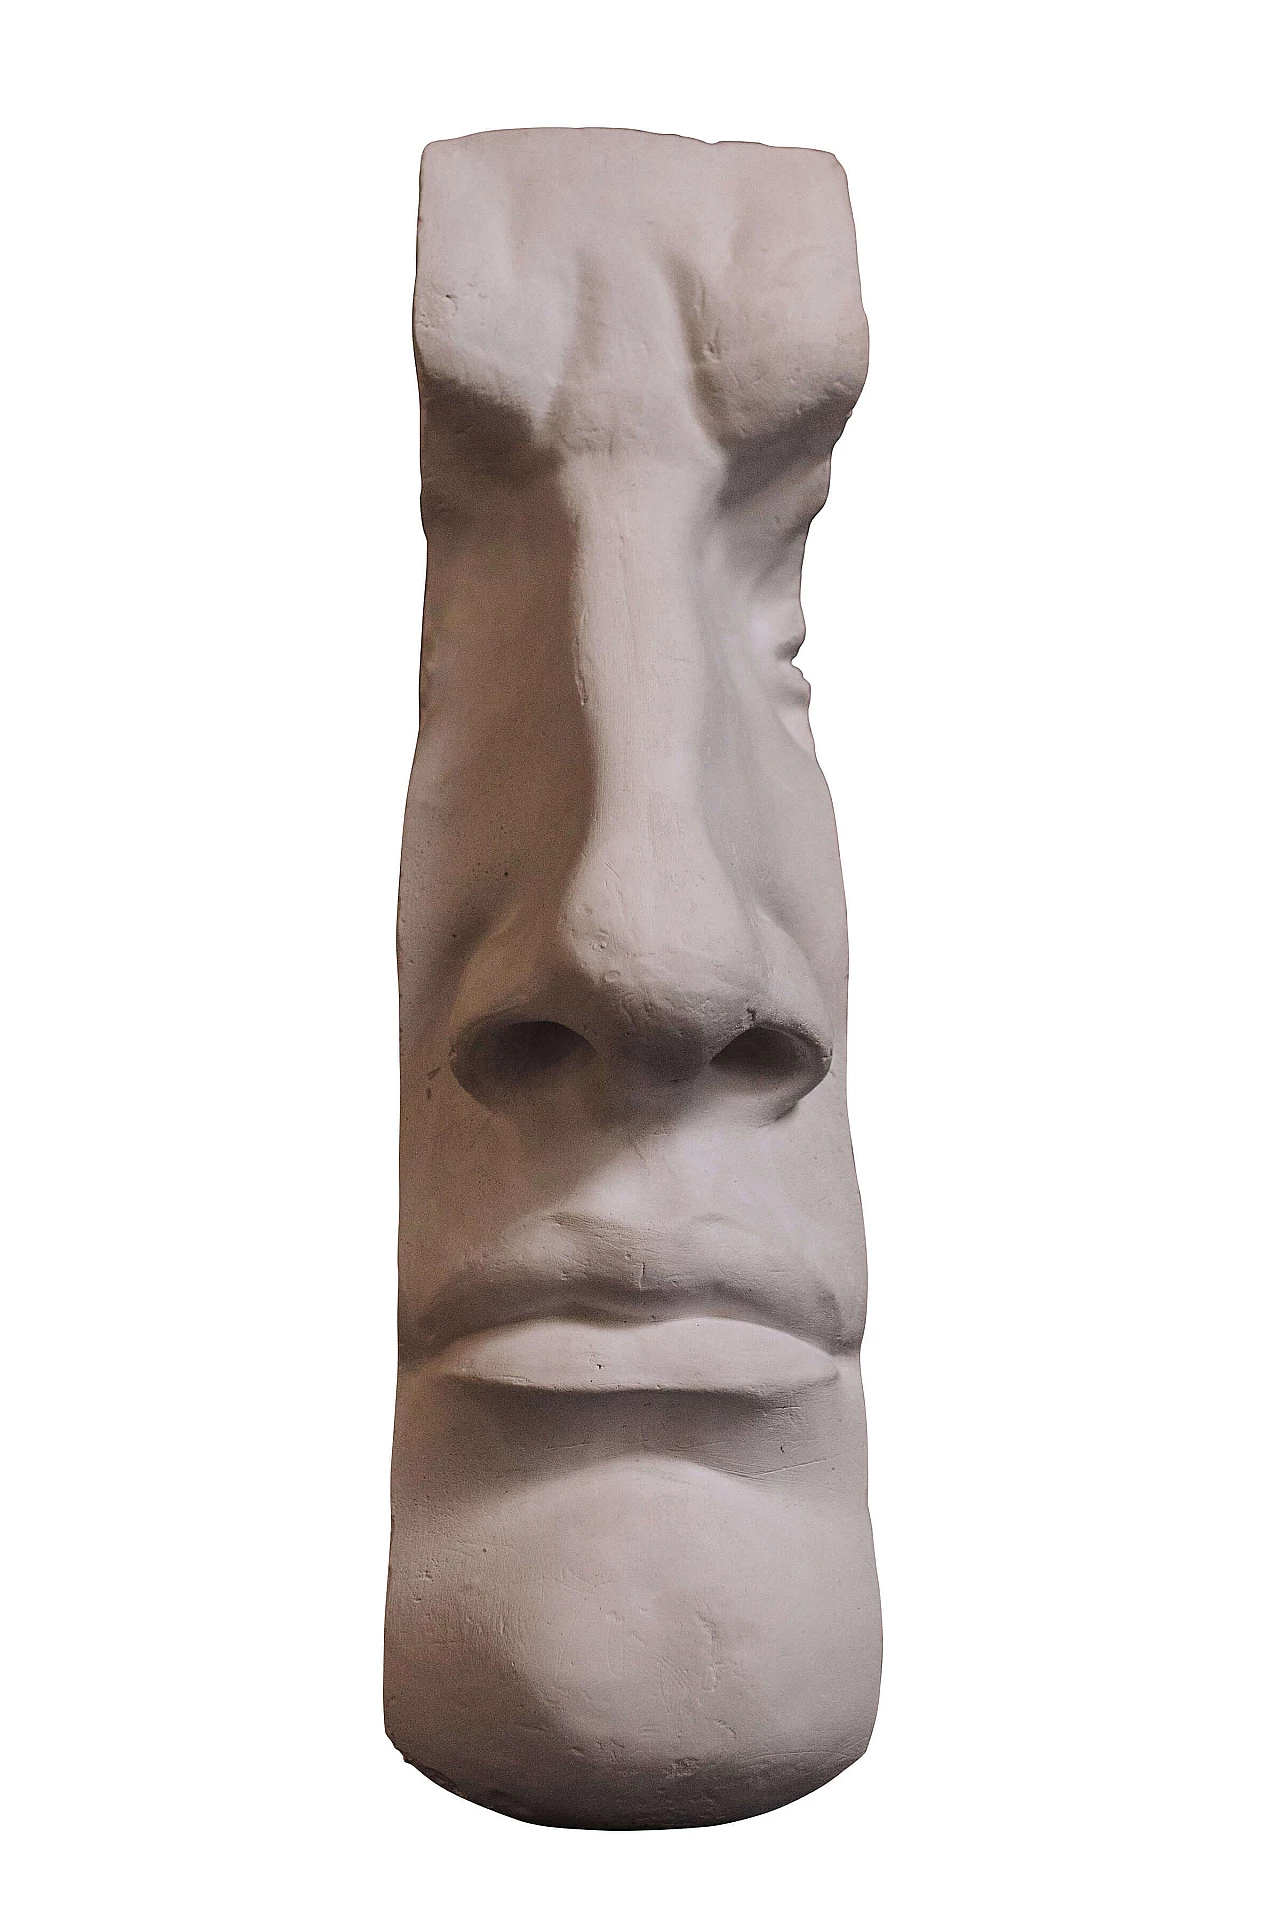 Profilo del David di Michelangelo in gesso 1151558